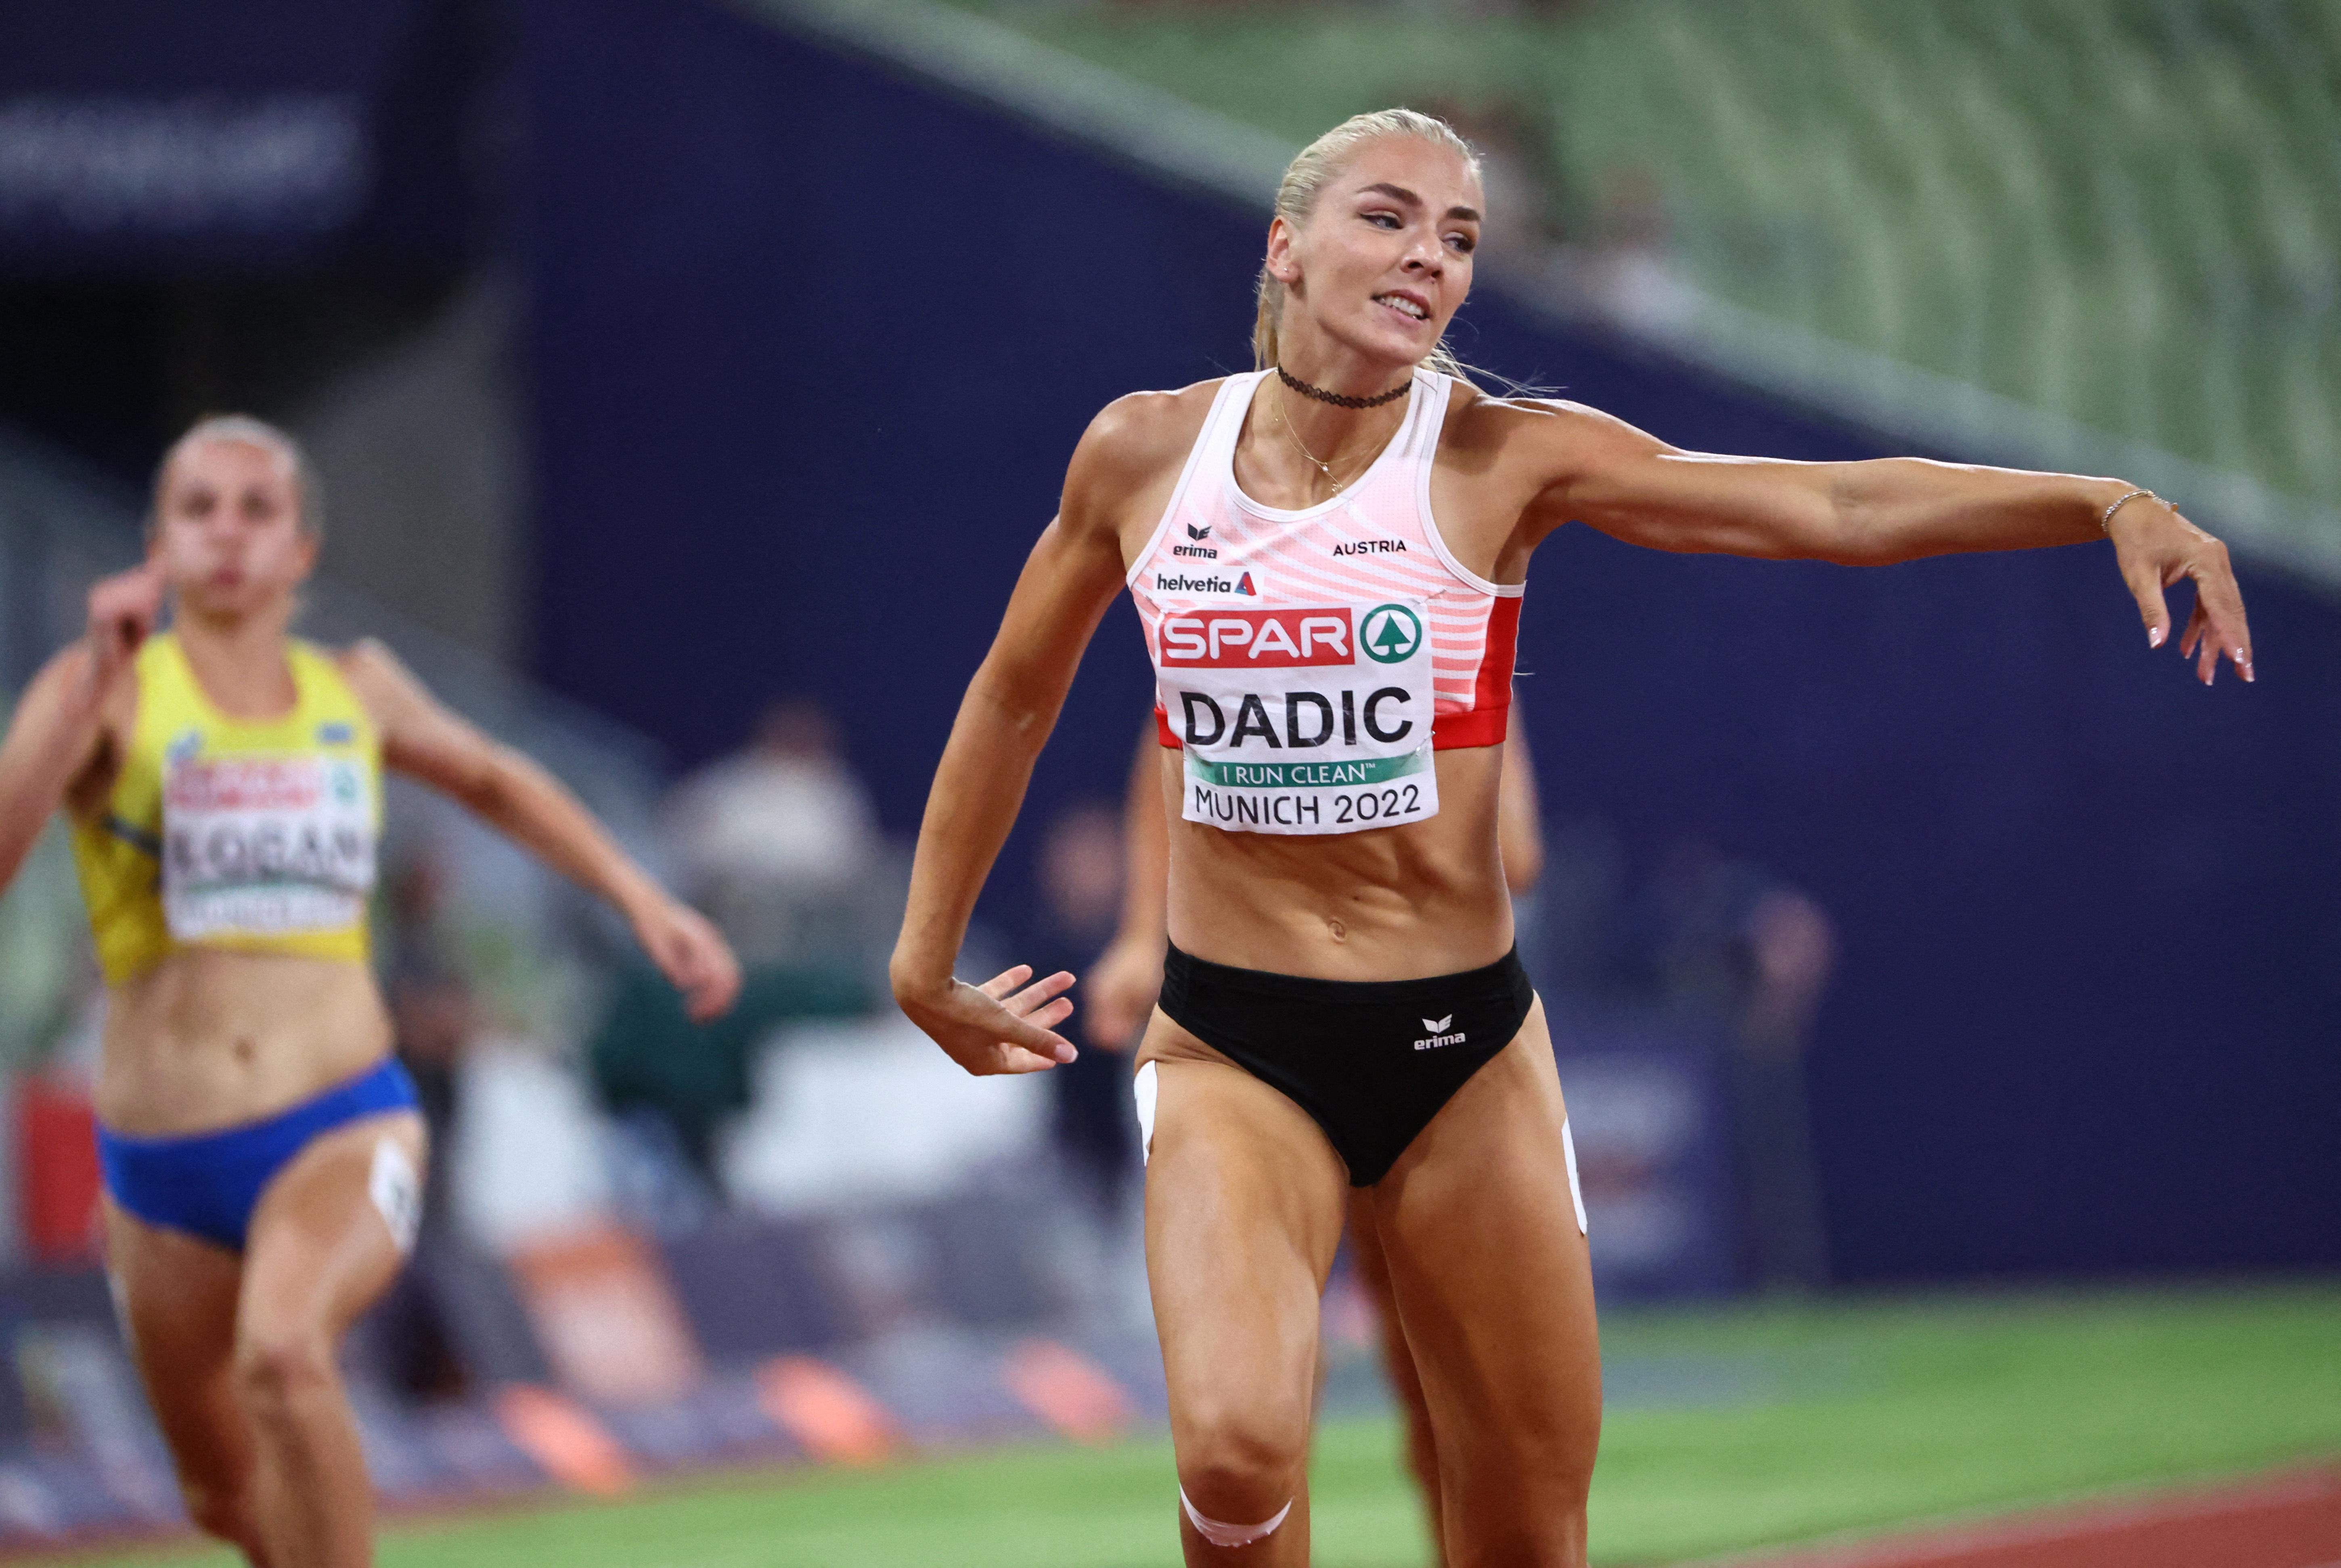 Drama um Siebenkämpferin Dadic: Disqualifikation über 200 Meter